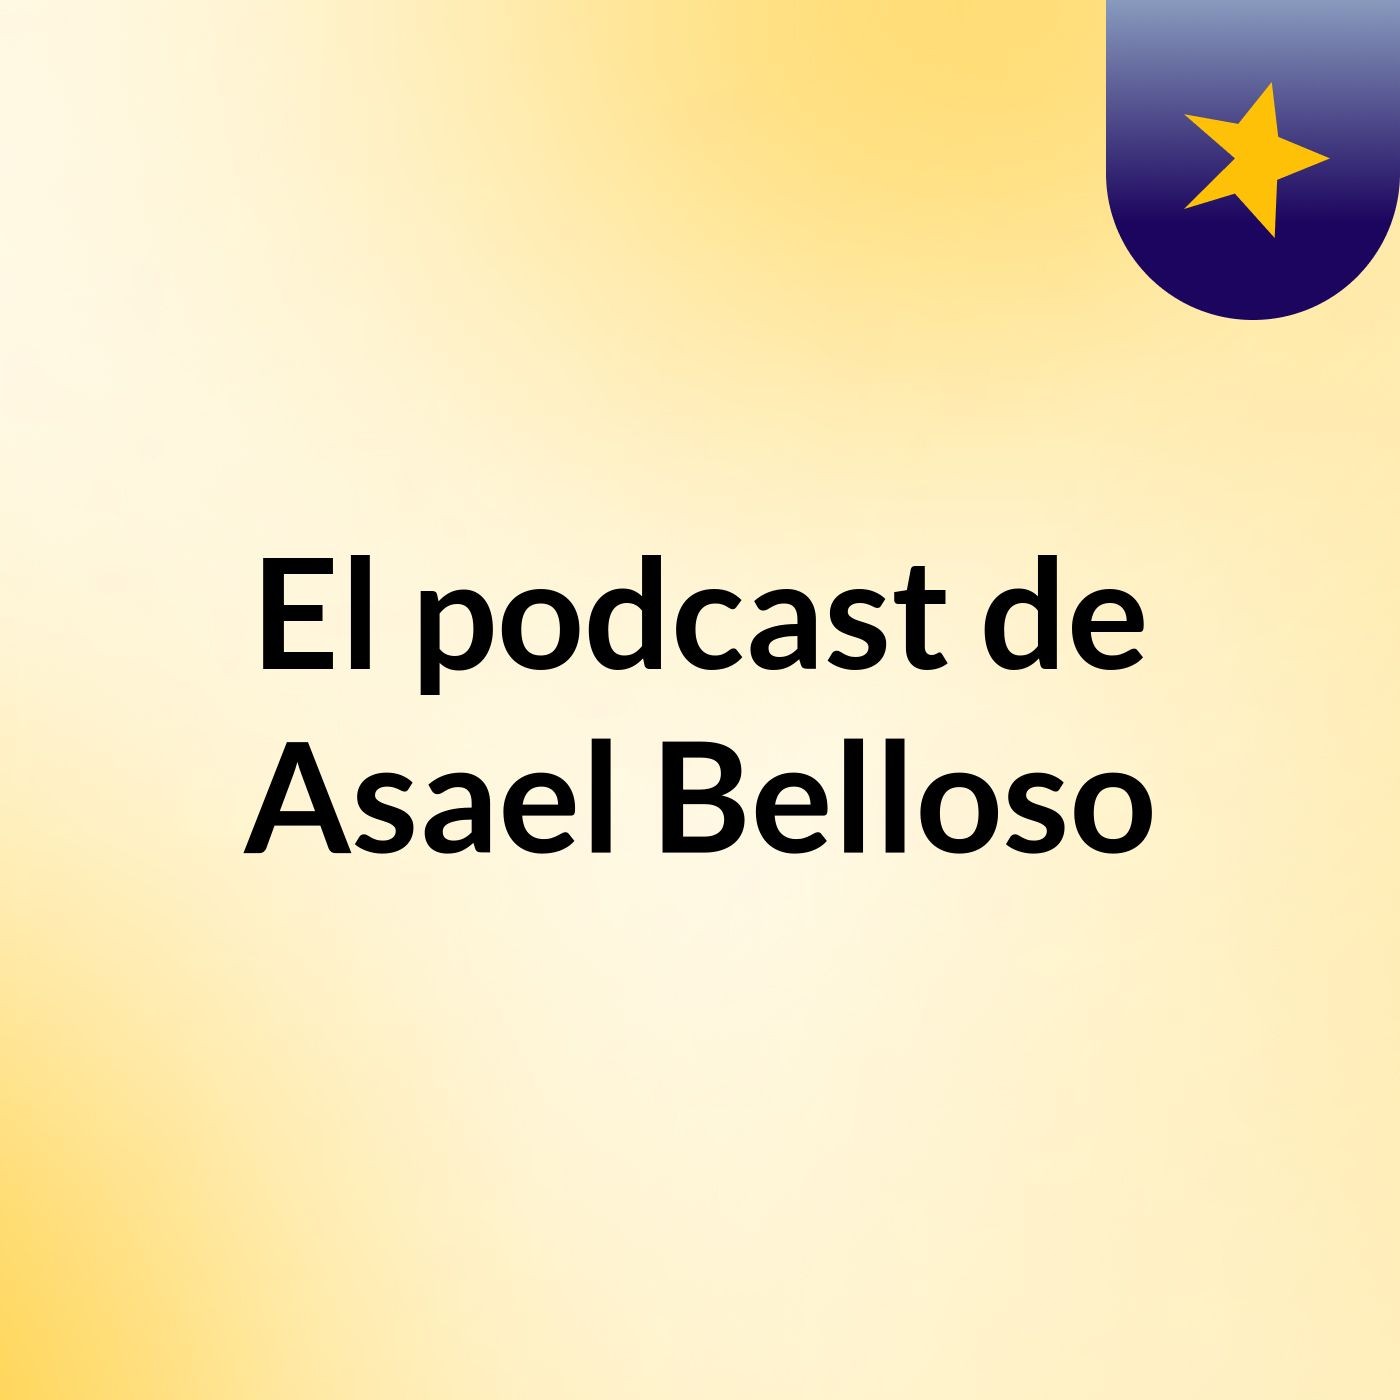 El podcast de Asael Belloso